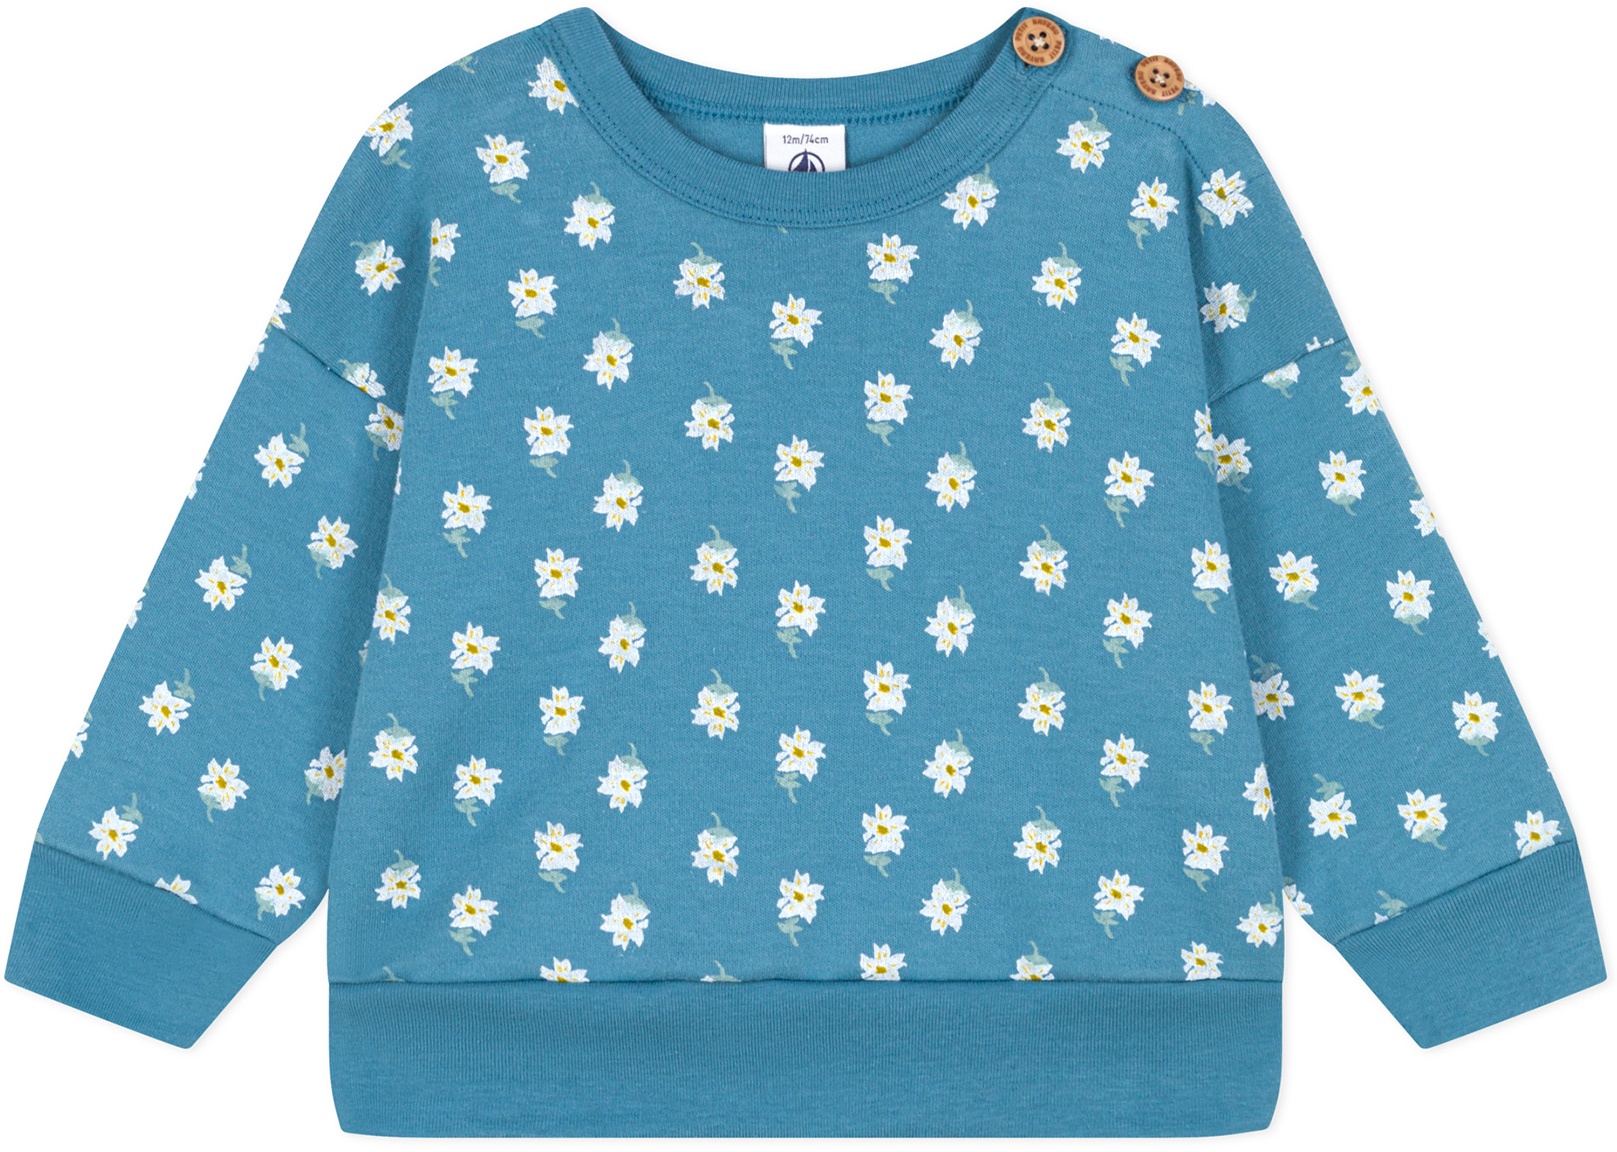 Petit Bateau - Sweatshirt LEGERE in blau, Gr.86